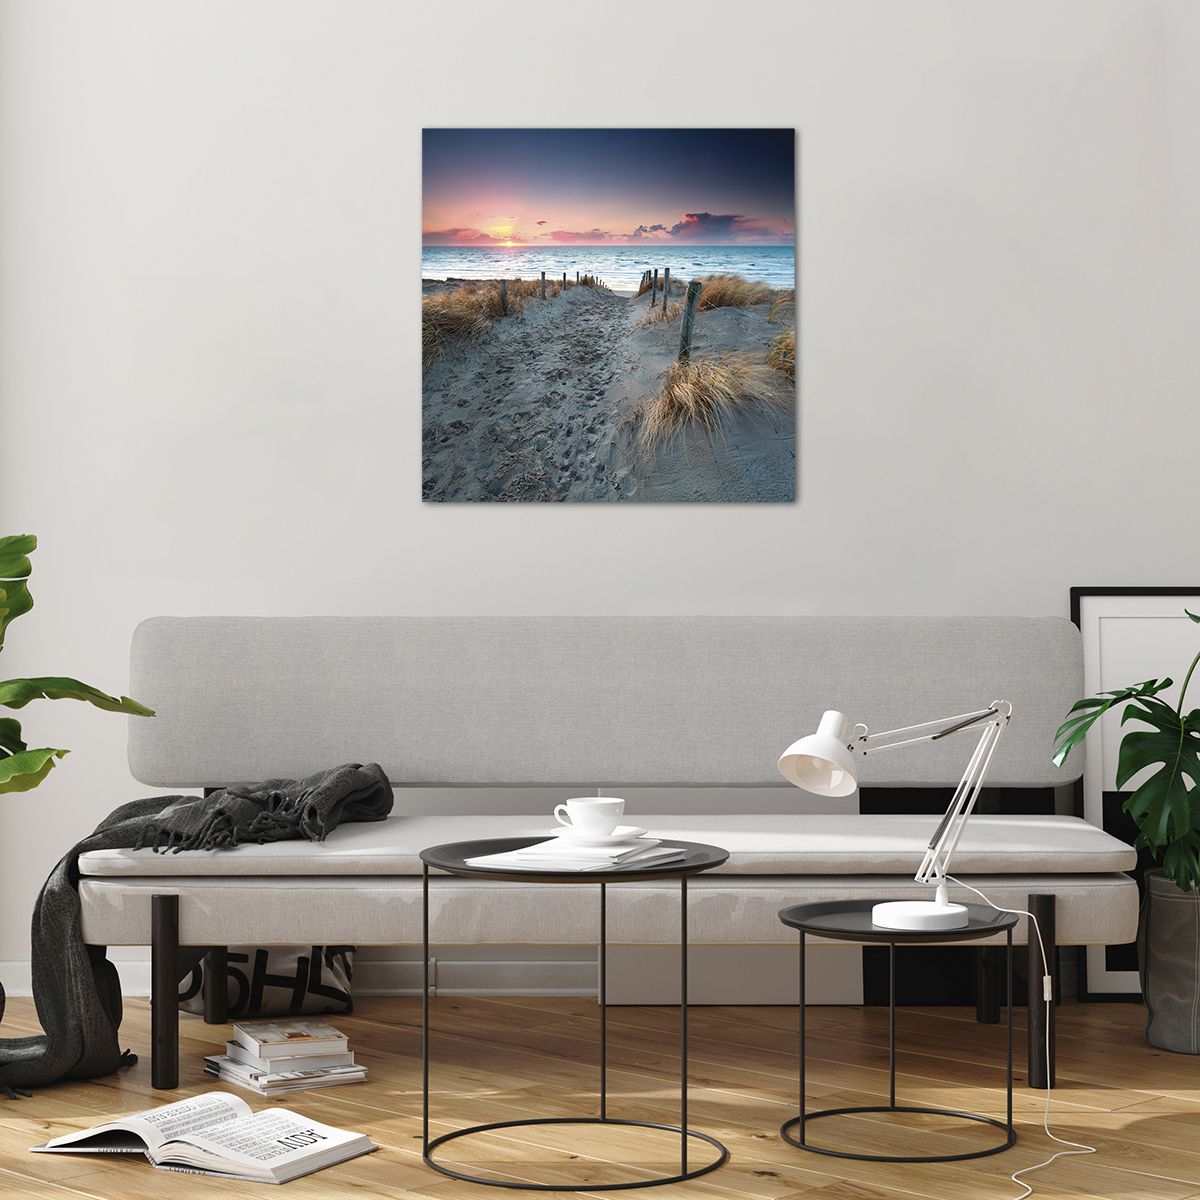 Bild på glas Landskap, Bild på glas Hav, Bild på glas Strand, Bild på glas Dyn, Bild på glas Solnedgången